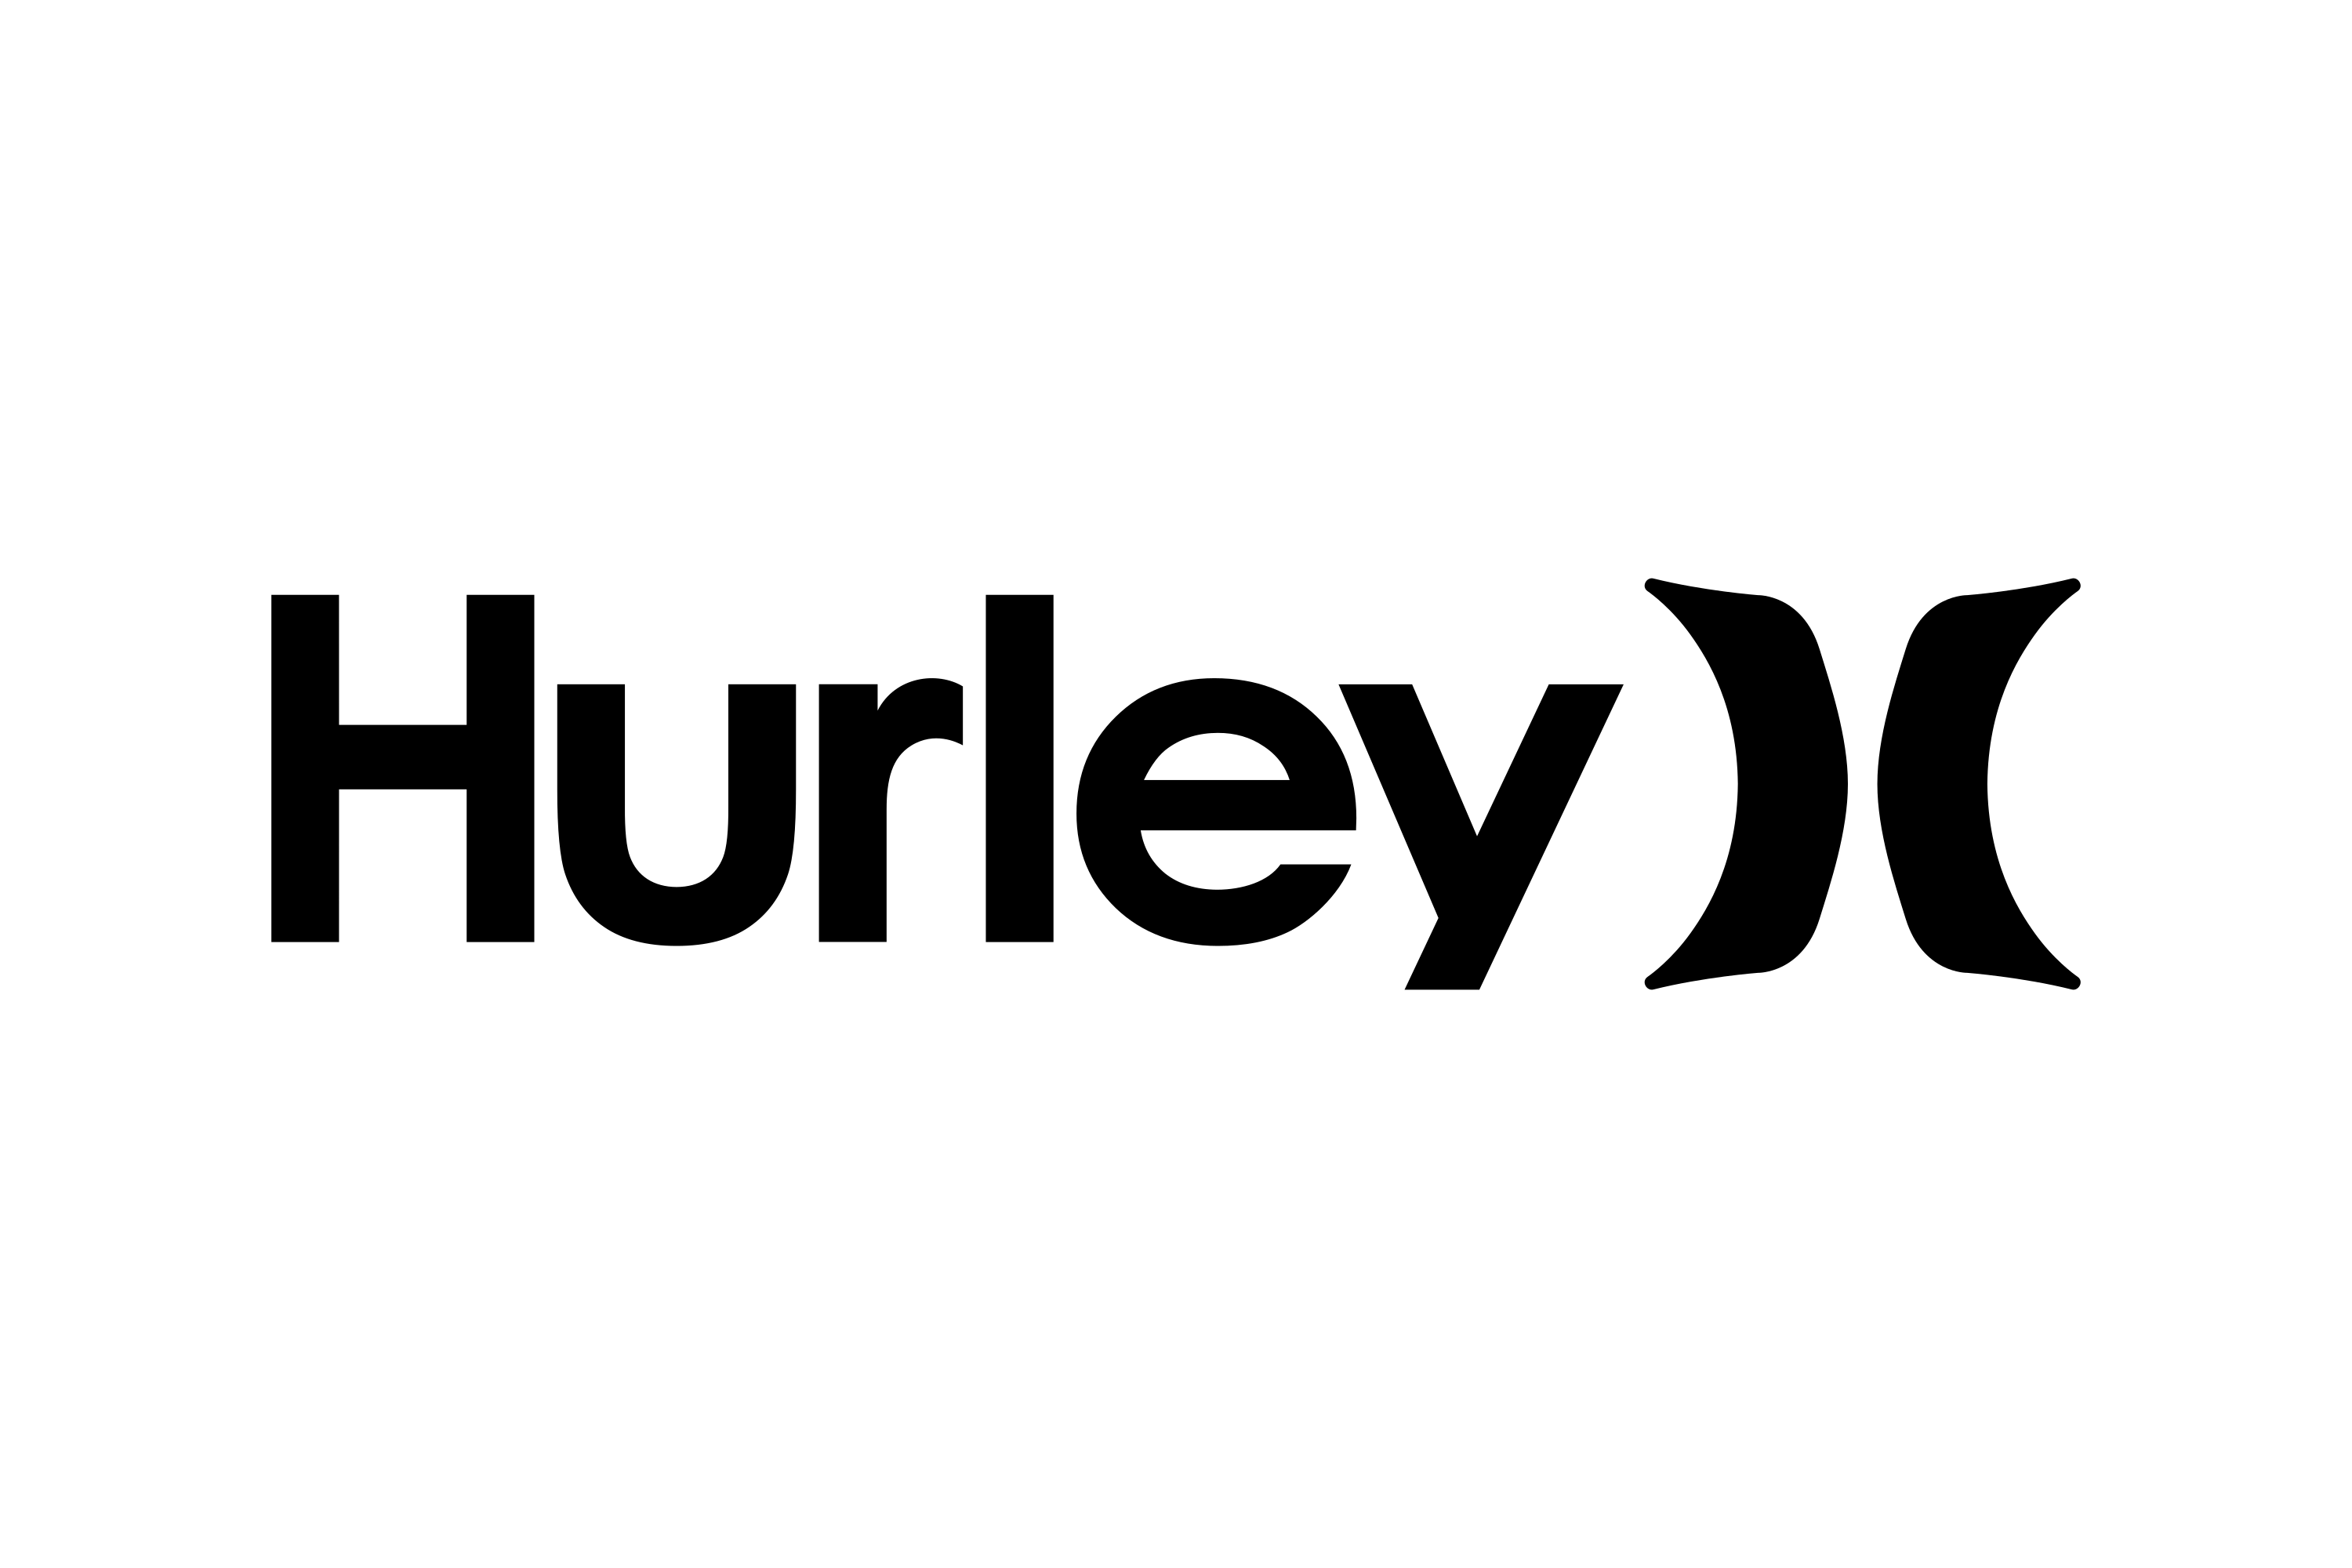 Download Download Hurley International Logo in SVG Vector or PNG File Format - Logo.wine